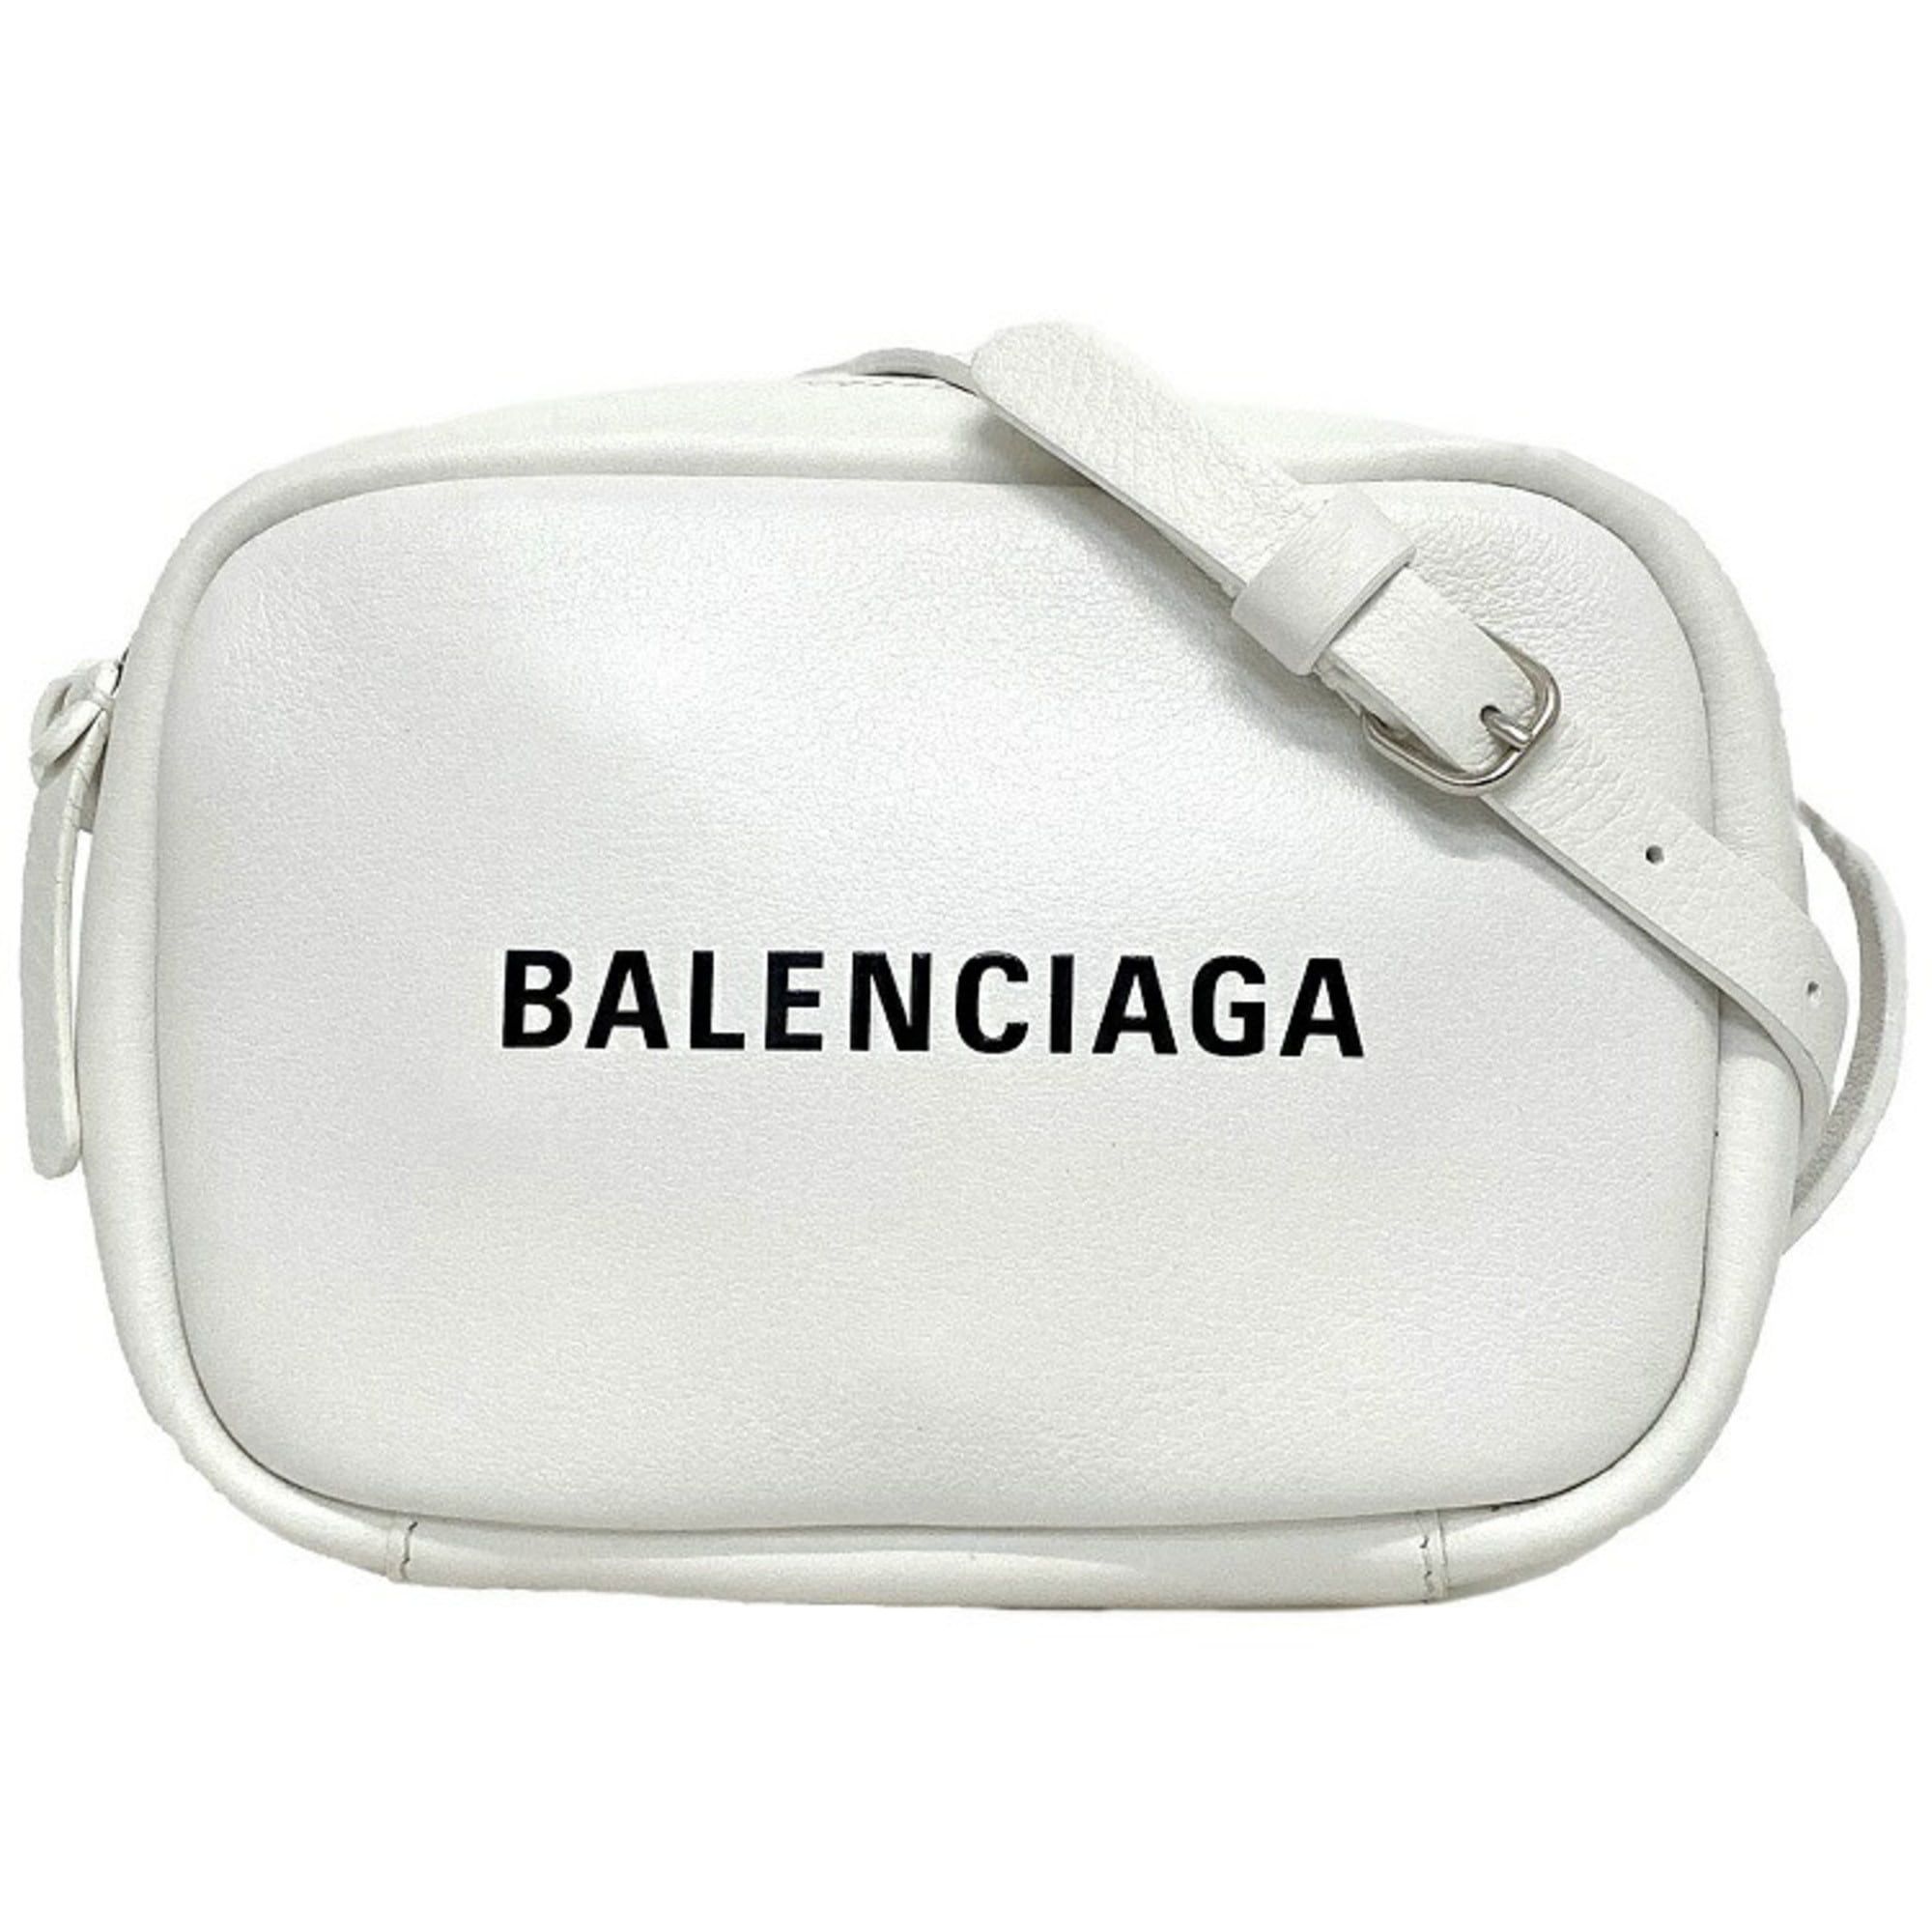 Balenciaga Everyday Small Camera Bag in Black